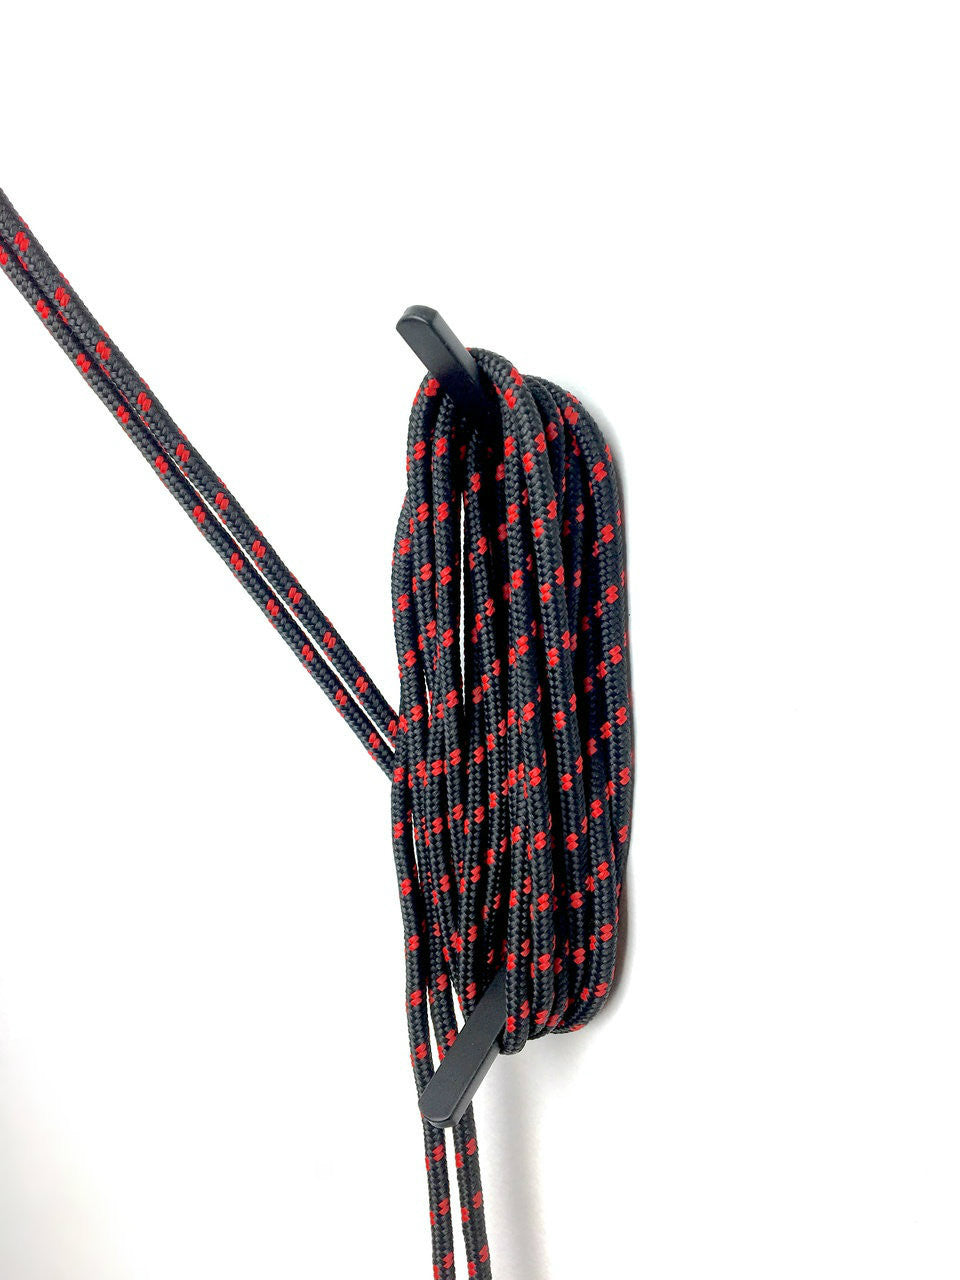 kayak pulley rope tie off